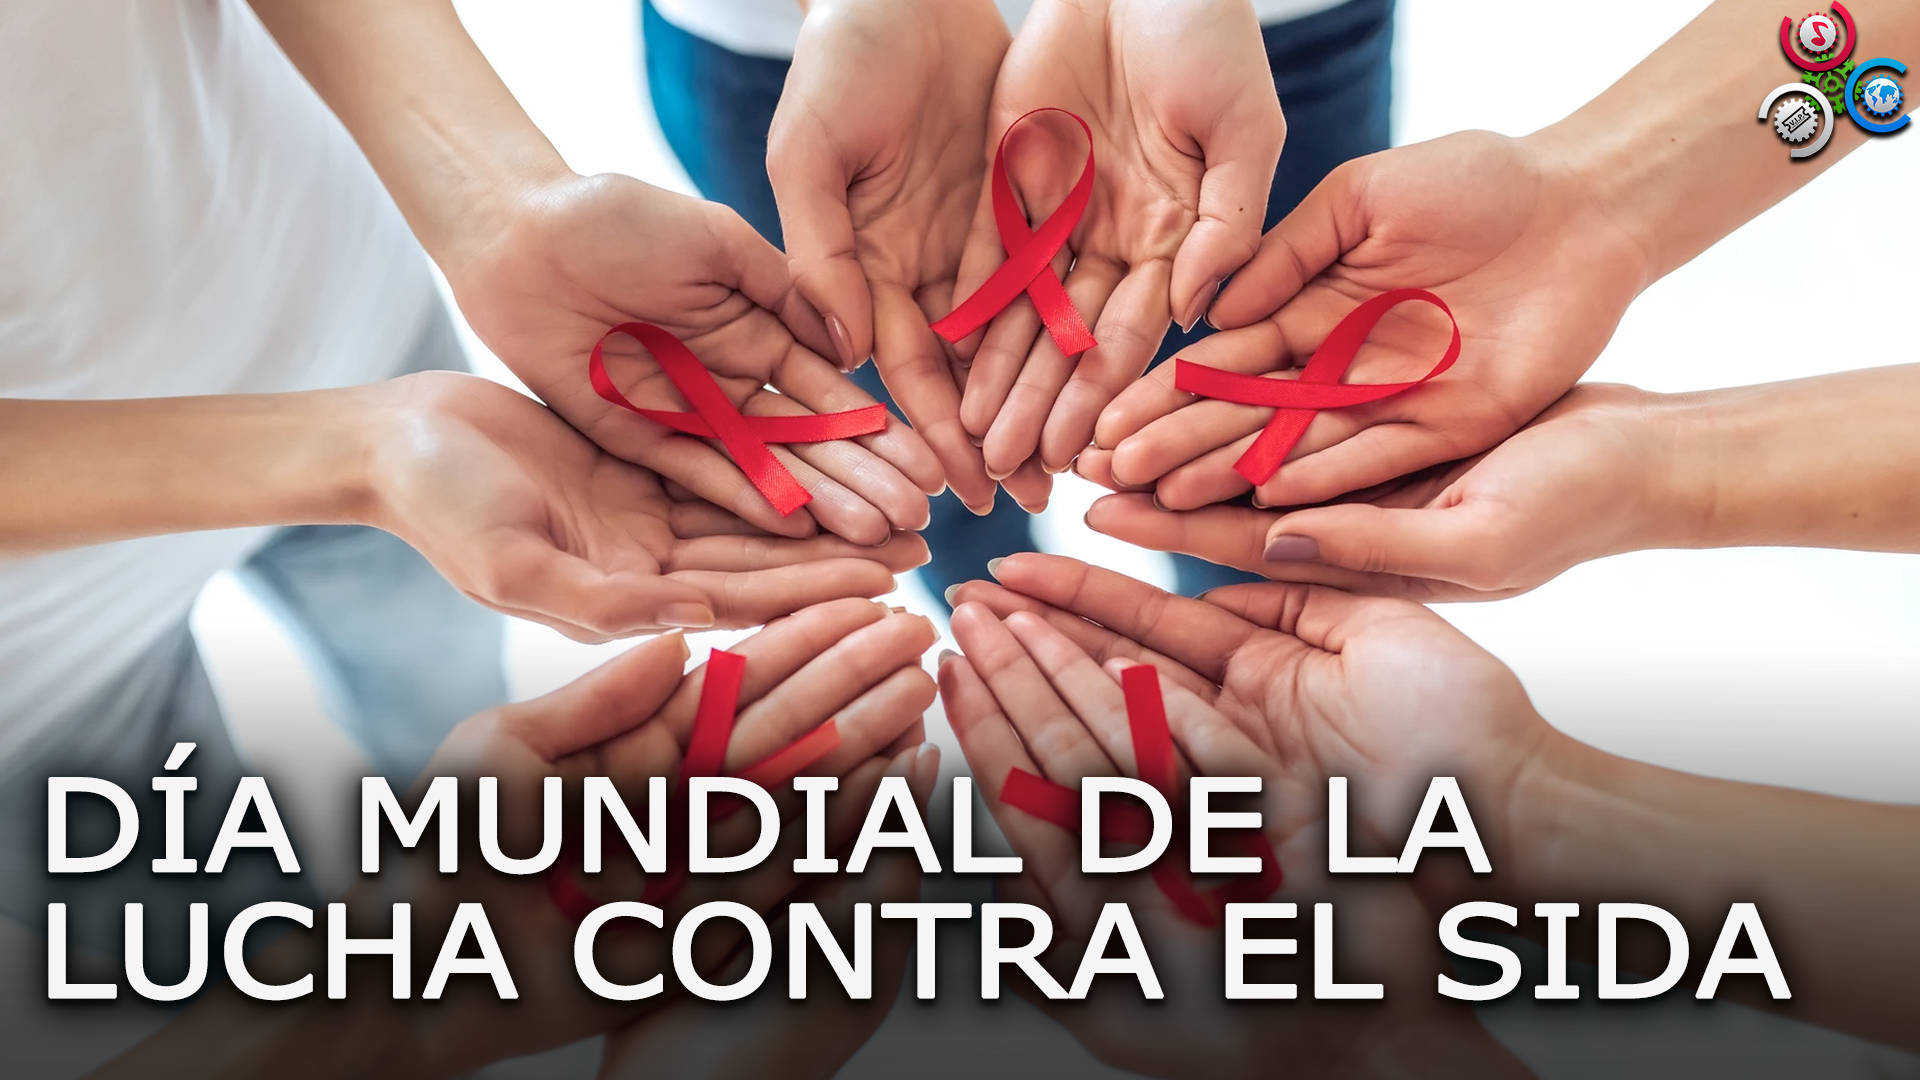 DÍA MUNDIAL DE LA LUCHA CONTRA EL SIDA Cachicha com